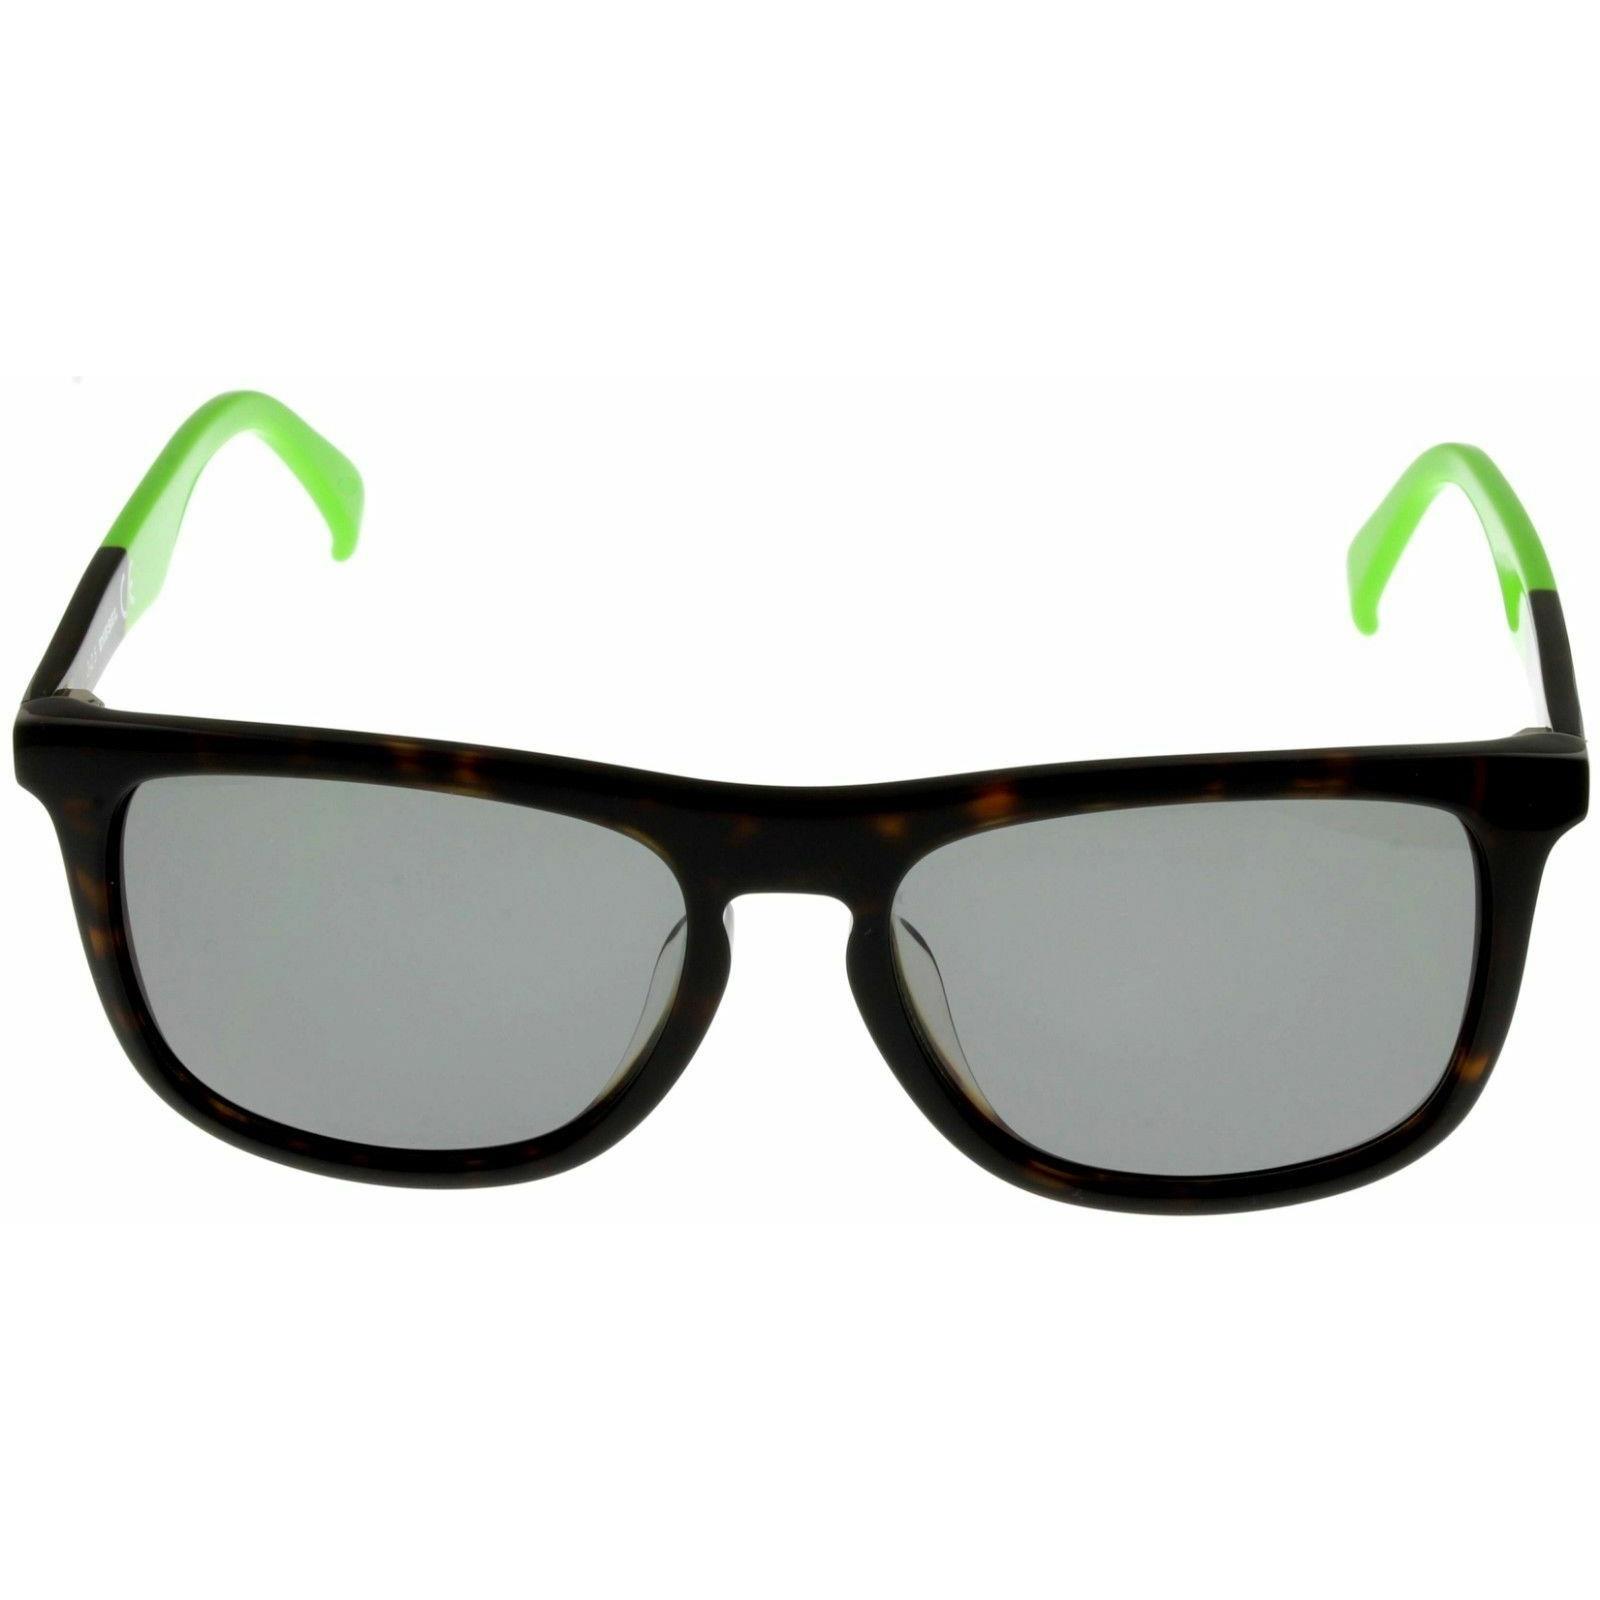 Diesel Sunglasses Green Tortoise Men Rectangular DL0162 52N